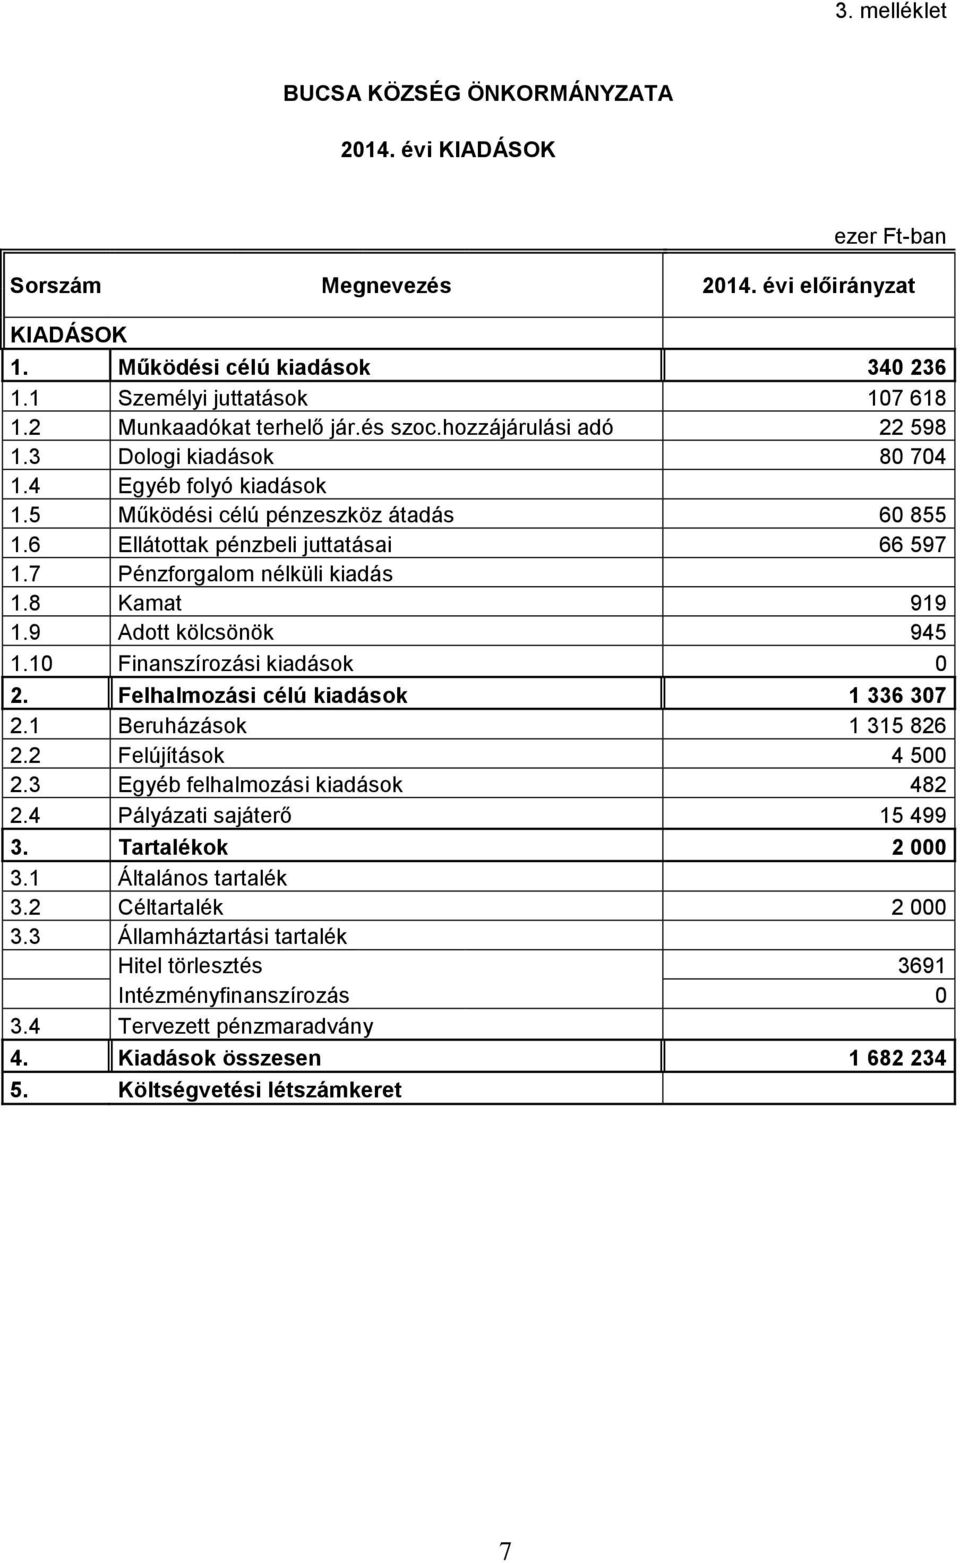 7 Pénzforgalom nélküli kiadás 1.8 Kamat 919 1.9 Adott kölcsönök 945 1.10 Finanszírozási kiadások 0 2. Felhalmozási célú kiadások 1 336 307 2.1 Beruházások 1 315 826 2.2 Felújítások 4 500 2.